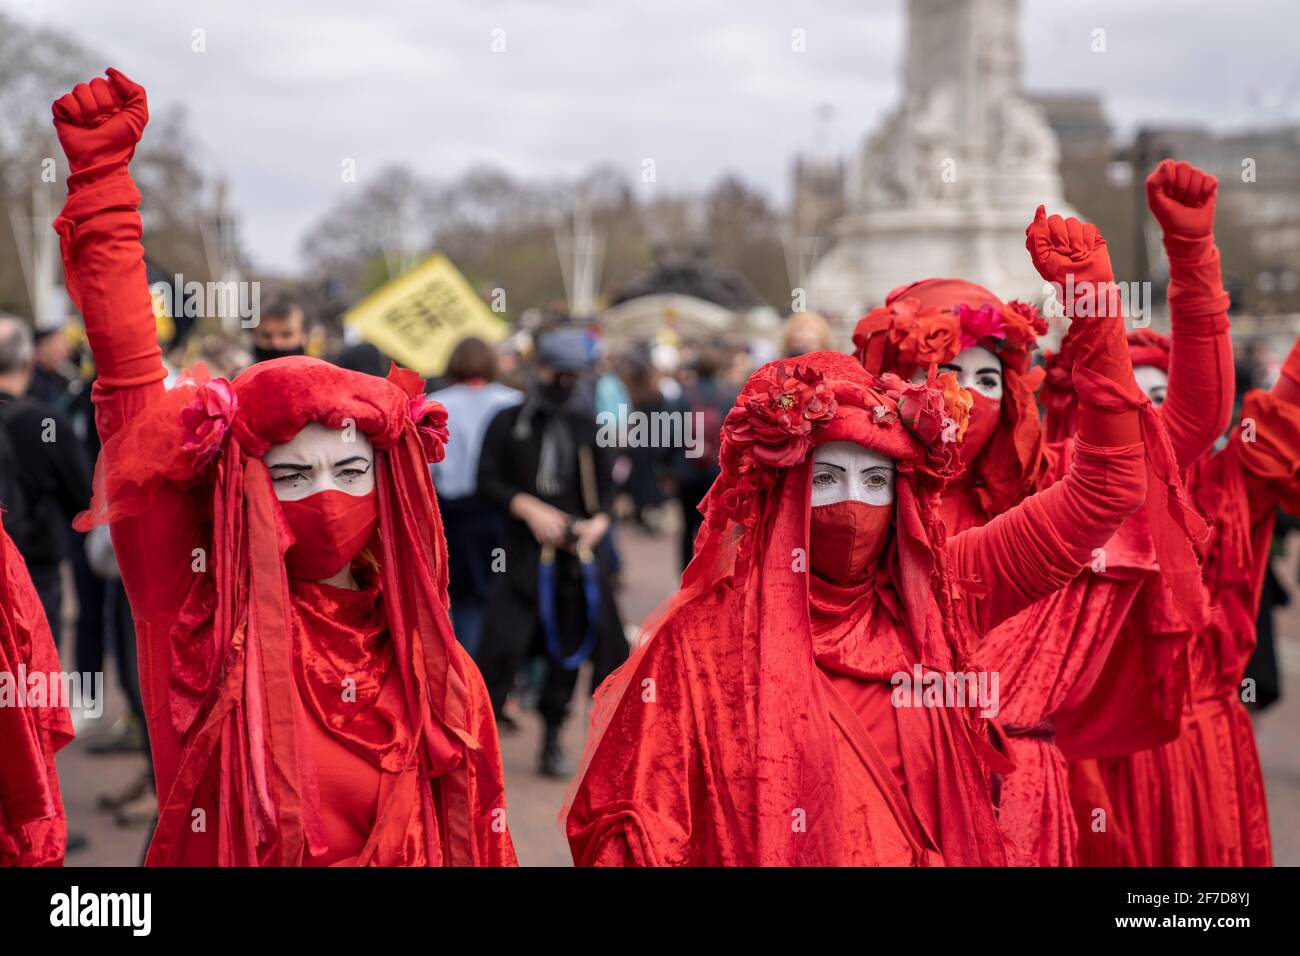 LONDRES, Royaume-Uni - 03ème avril 2021 : la Brigade Rouge, la rébellion d'extinction. Des manifestants vêtus de robes rouges aux visages blancs tuent le projet de loi en signe de protestation. Banque D'Images